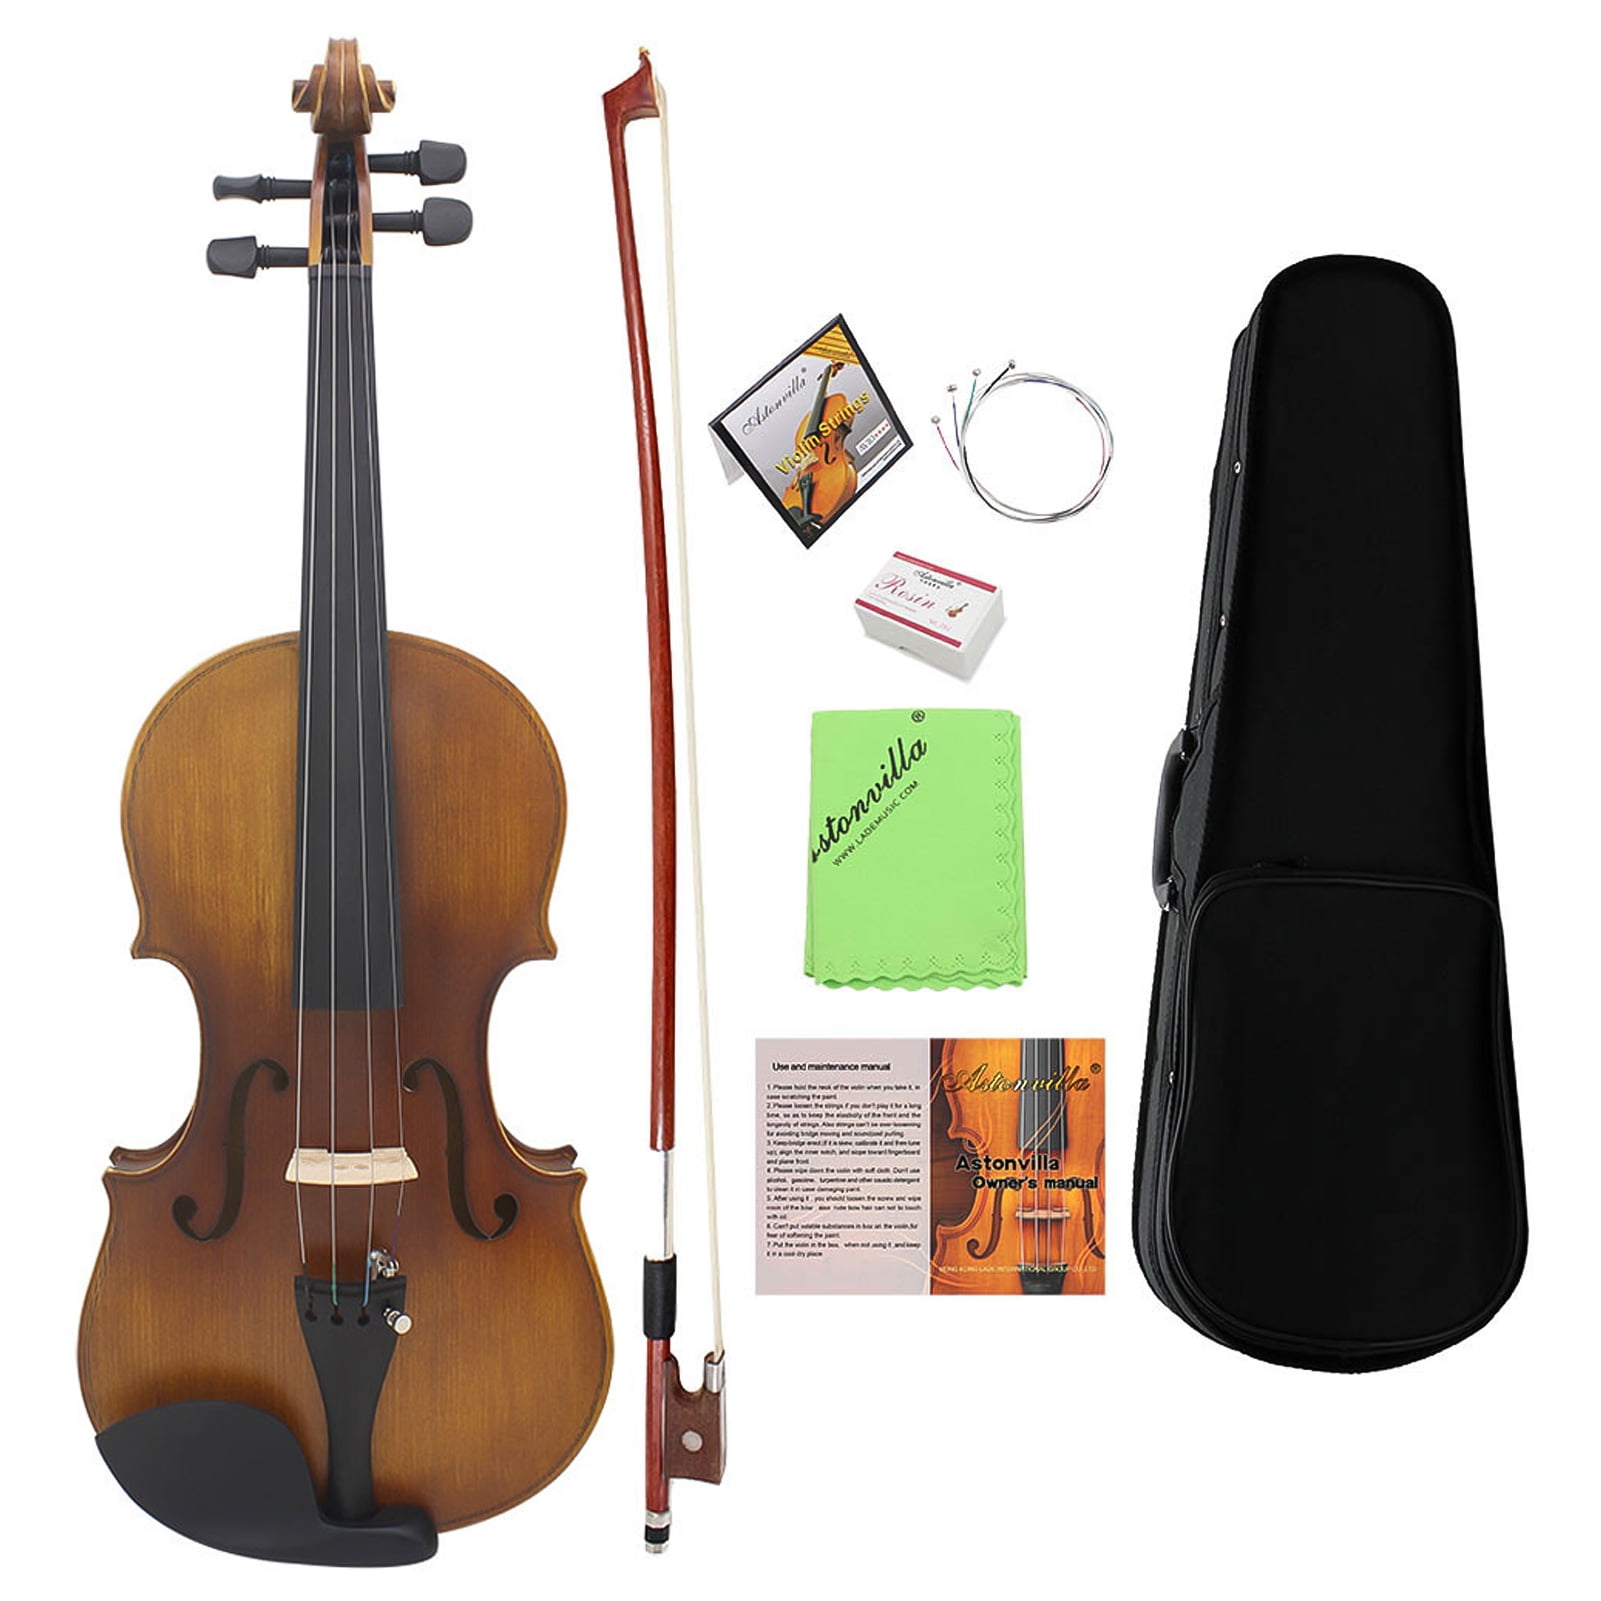 Violine 4/4 Geige solide Holz Mattende Northeast Pine Gesicht Board Z9Y1 